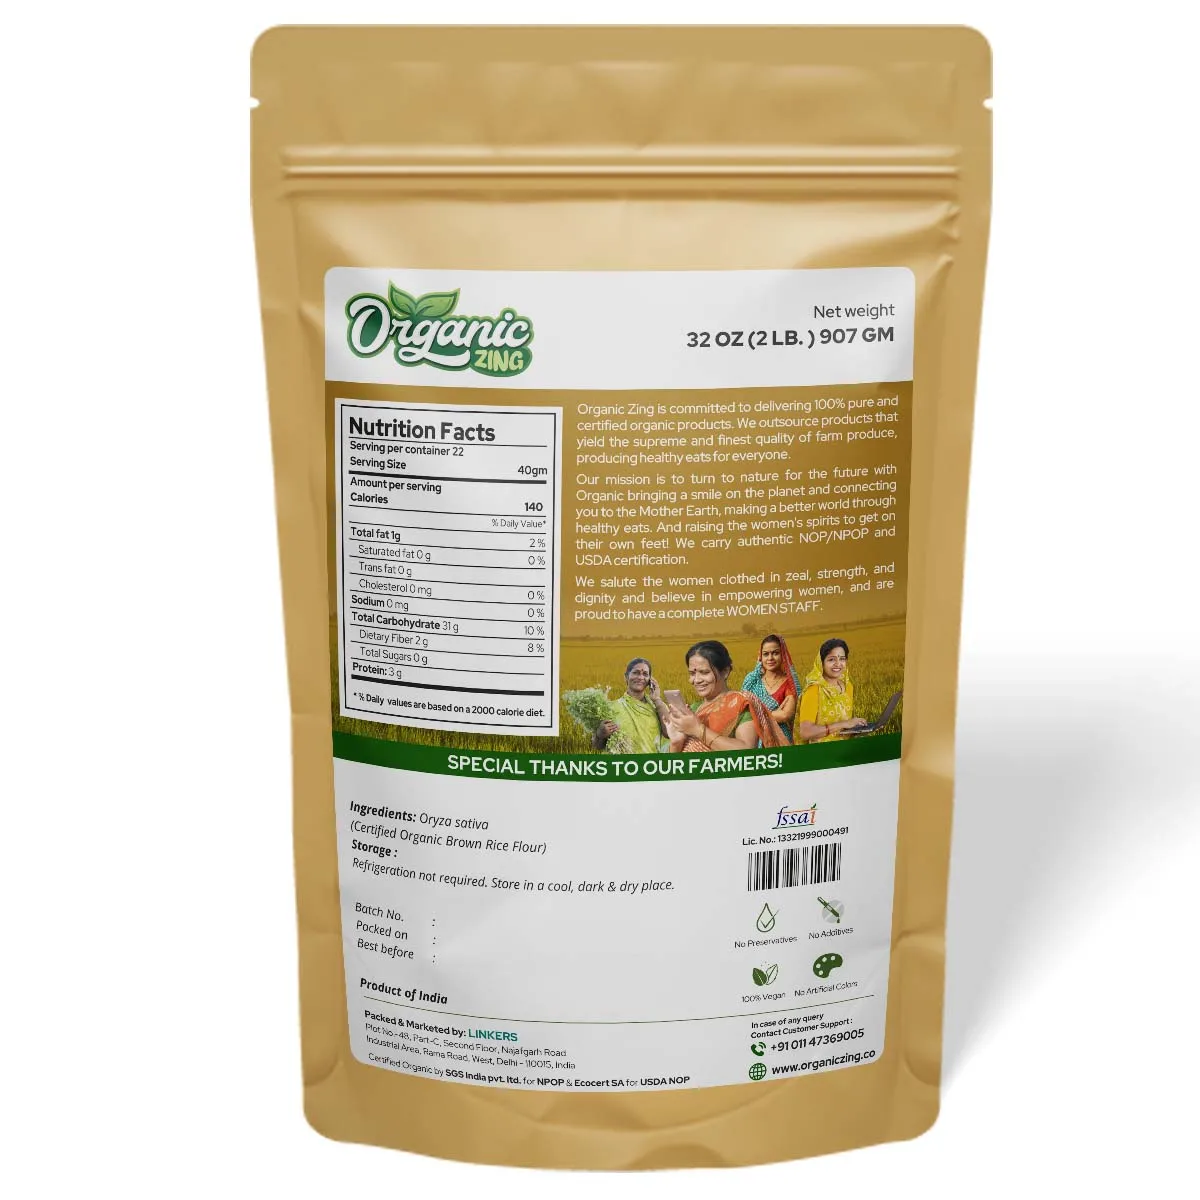 100% Органическая Высококачественная Органическая мука из коричневого риса zing, высокое качество, индийское производство, Лидер продаж, полностью Органическая